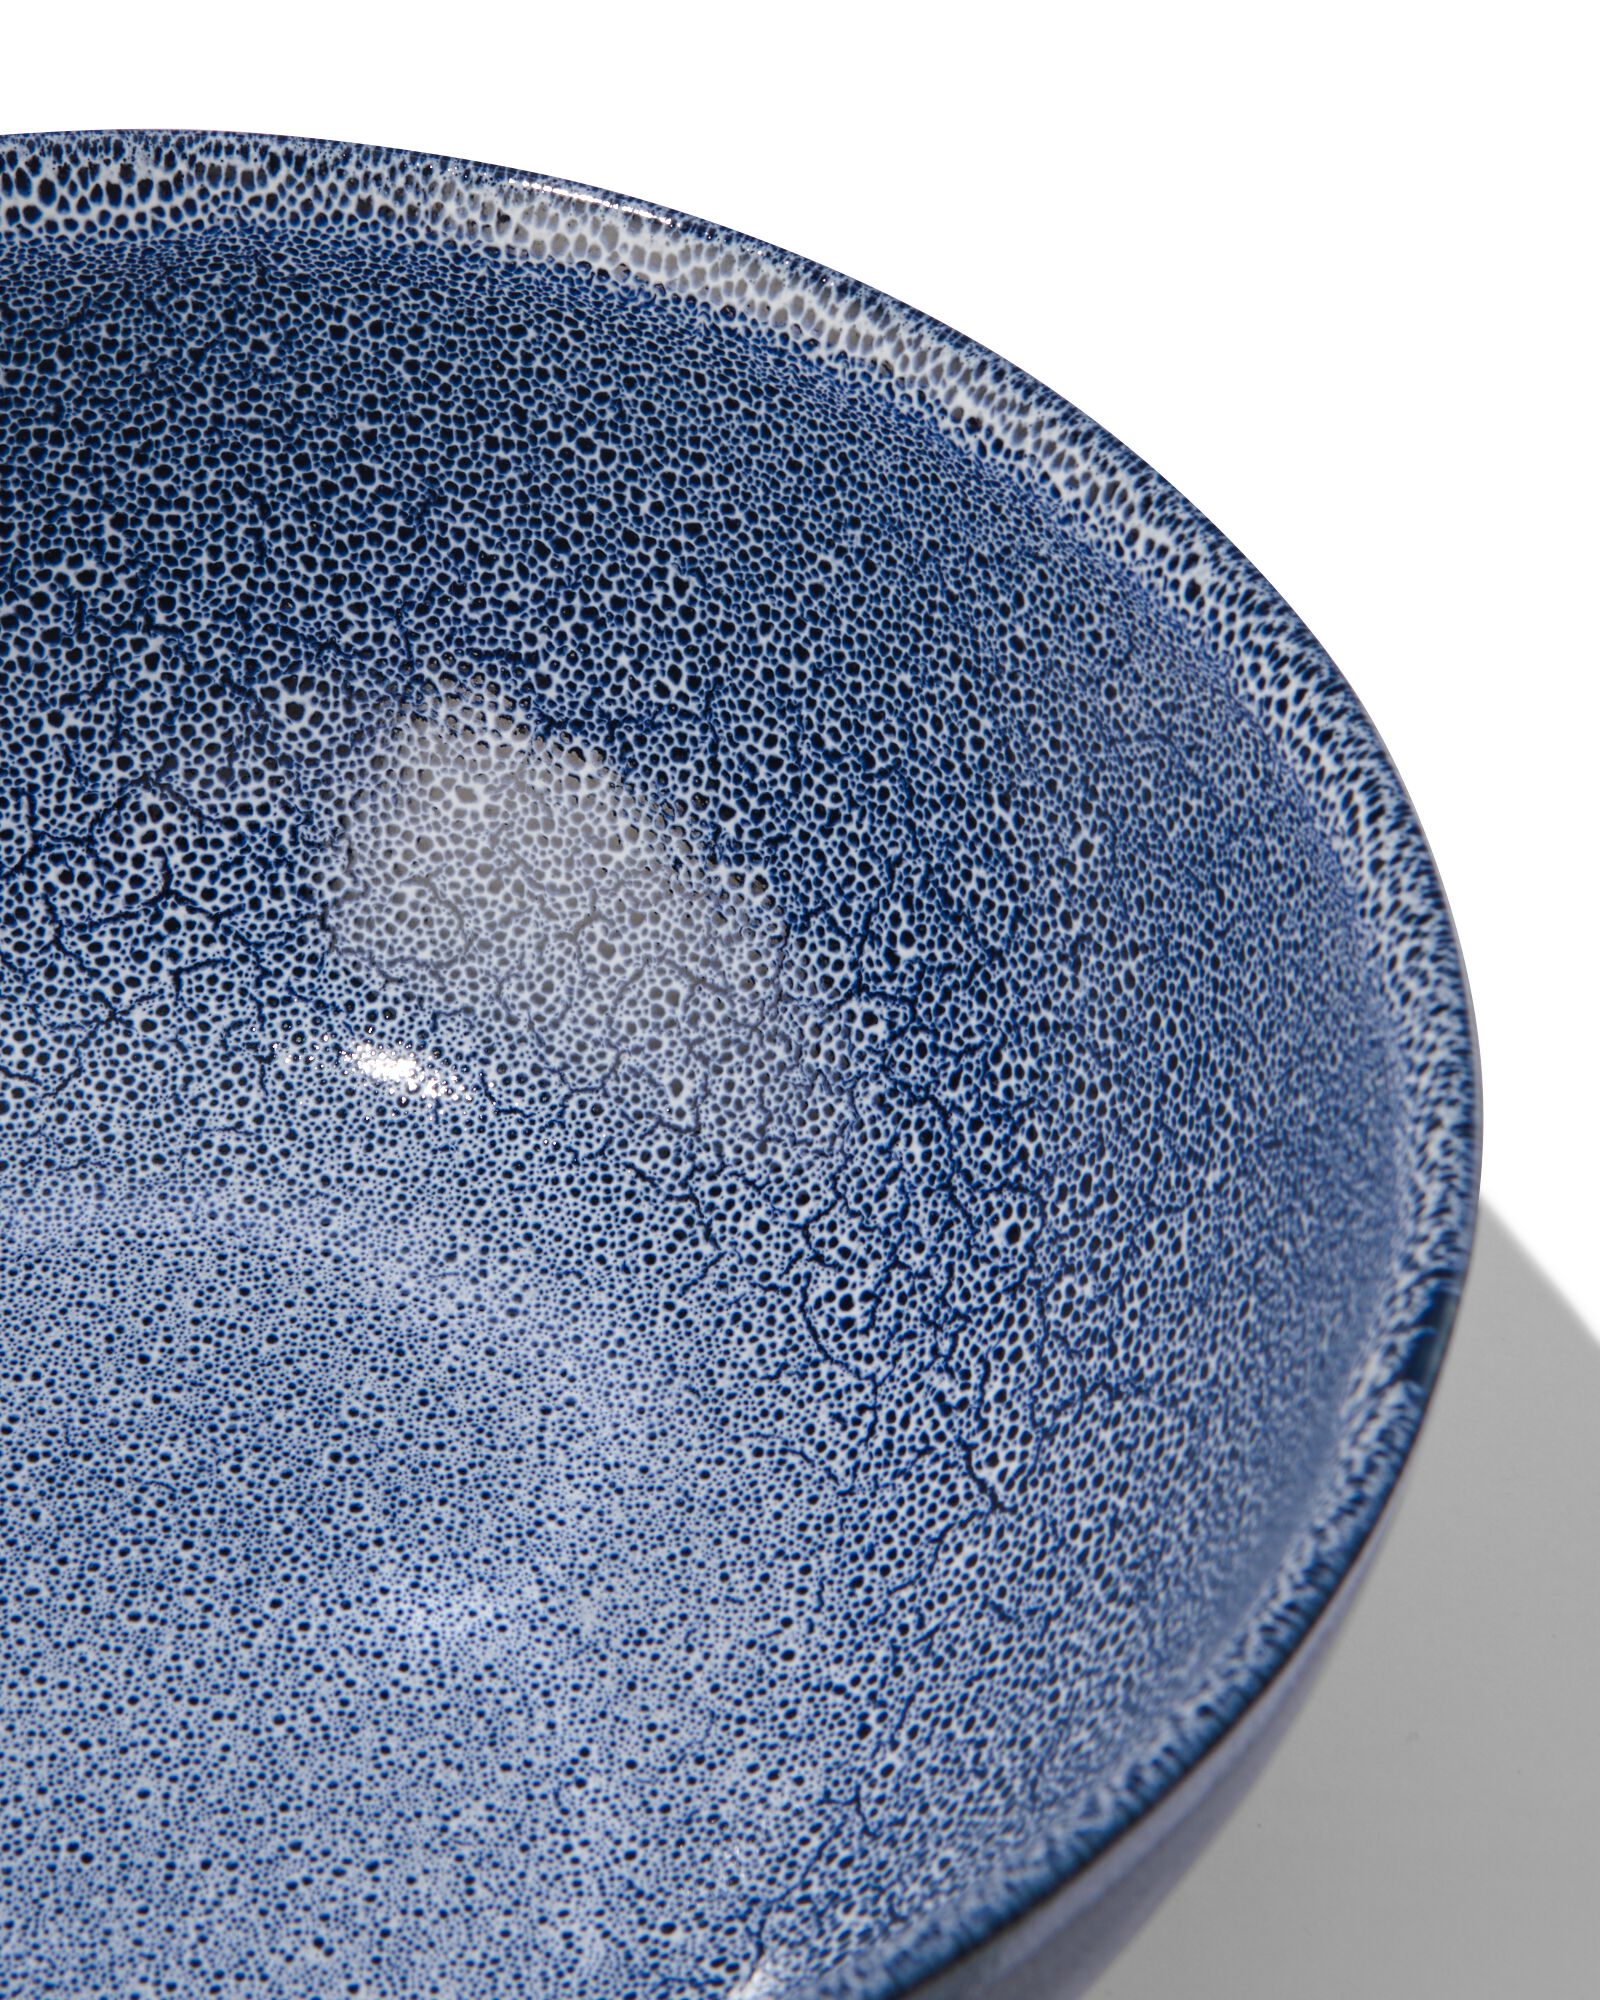 saladeschaal 26cm Porto reactief glazuur wit/blauw - 9602257 - HEMA